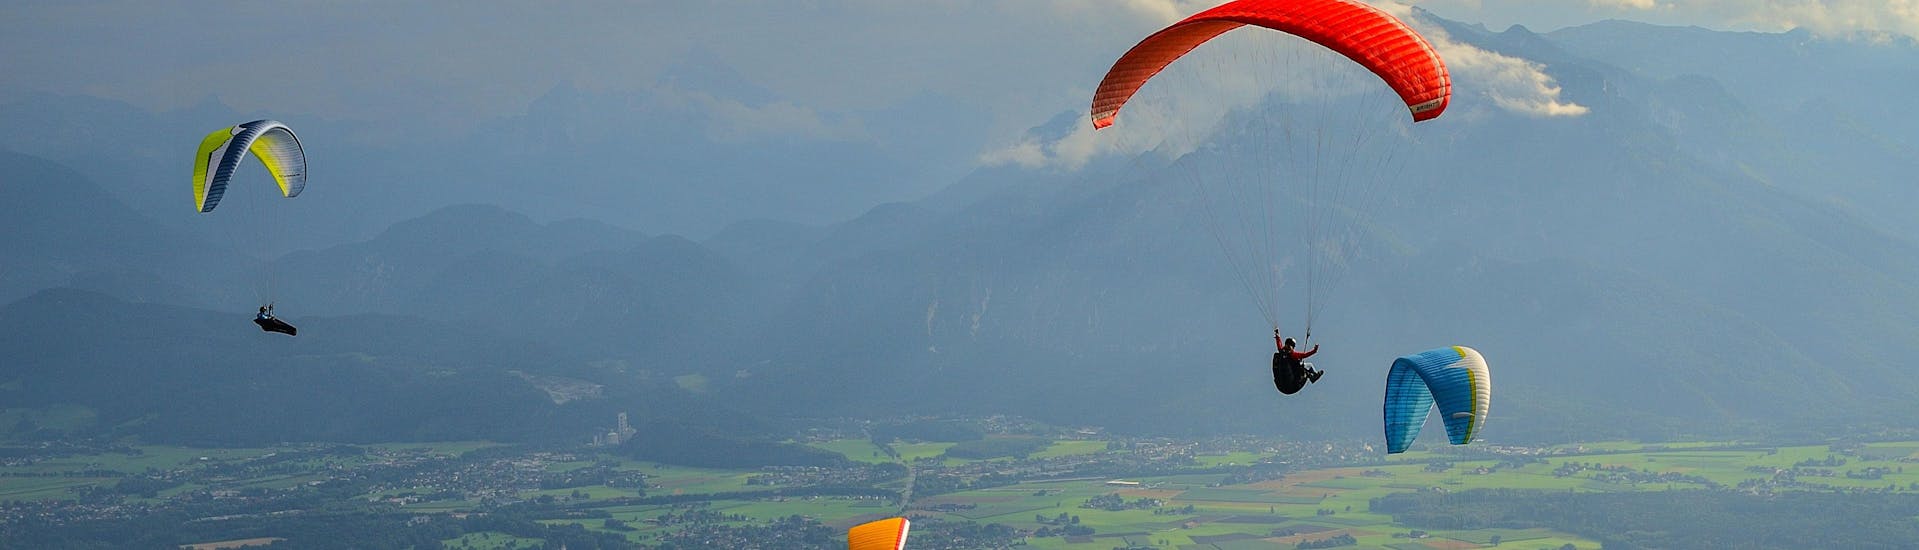 Un entusiasmado participante en un vuelo en parapente biplaza sobrevuela Salzburg City, uno de los sitios más populares para volar en parapente.